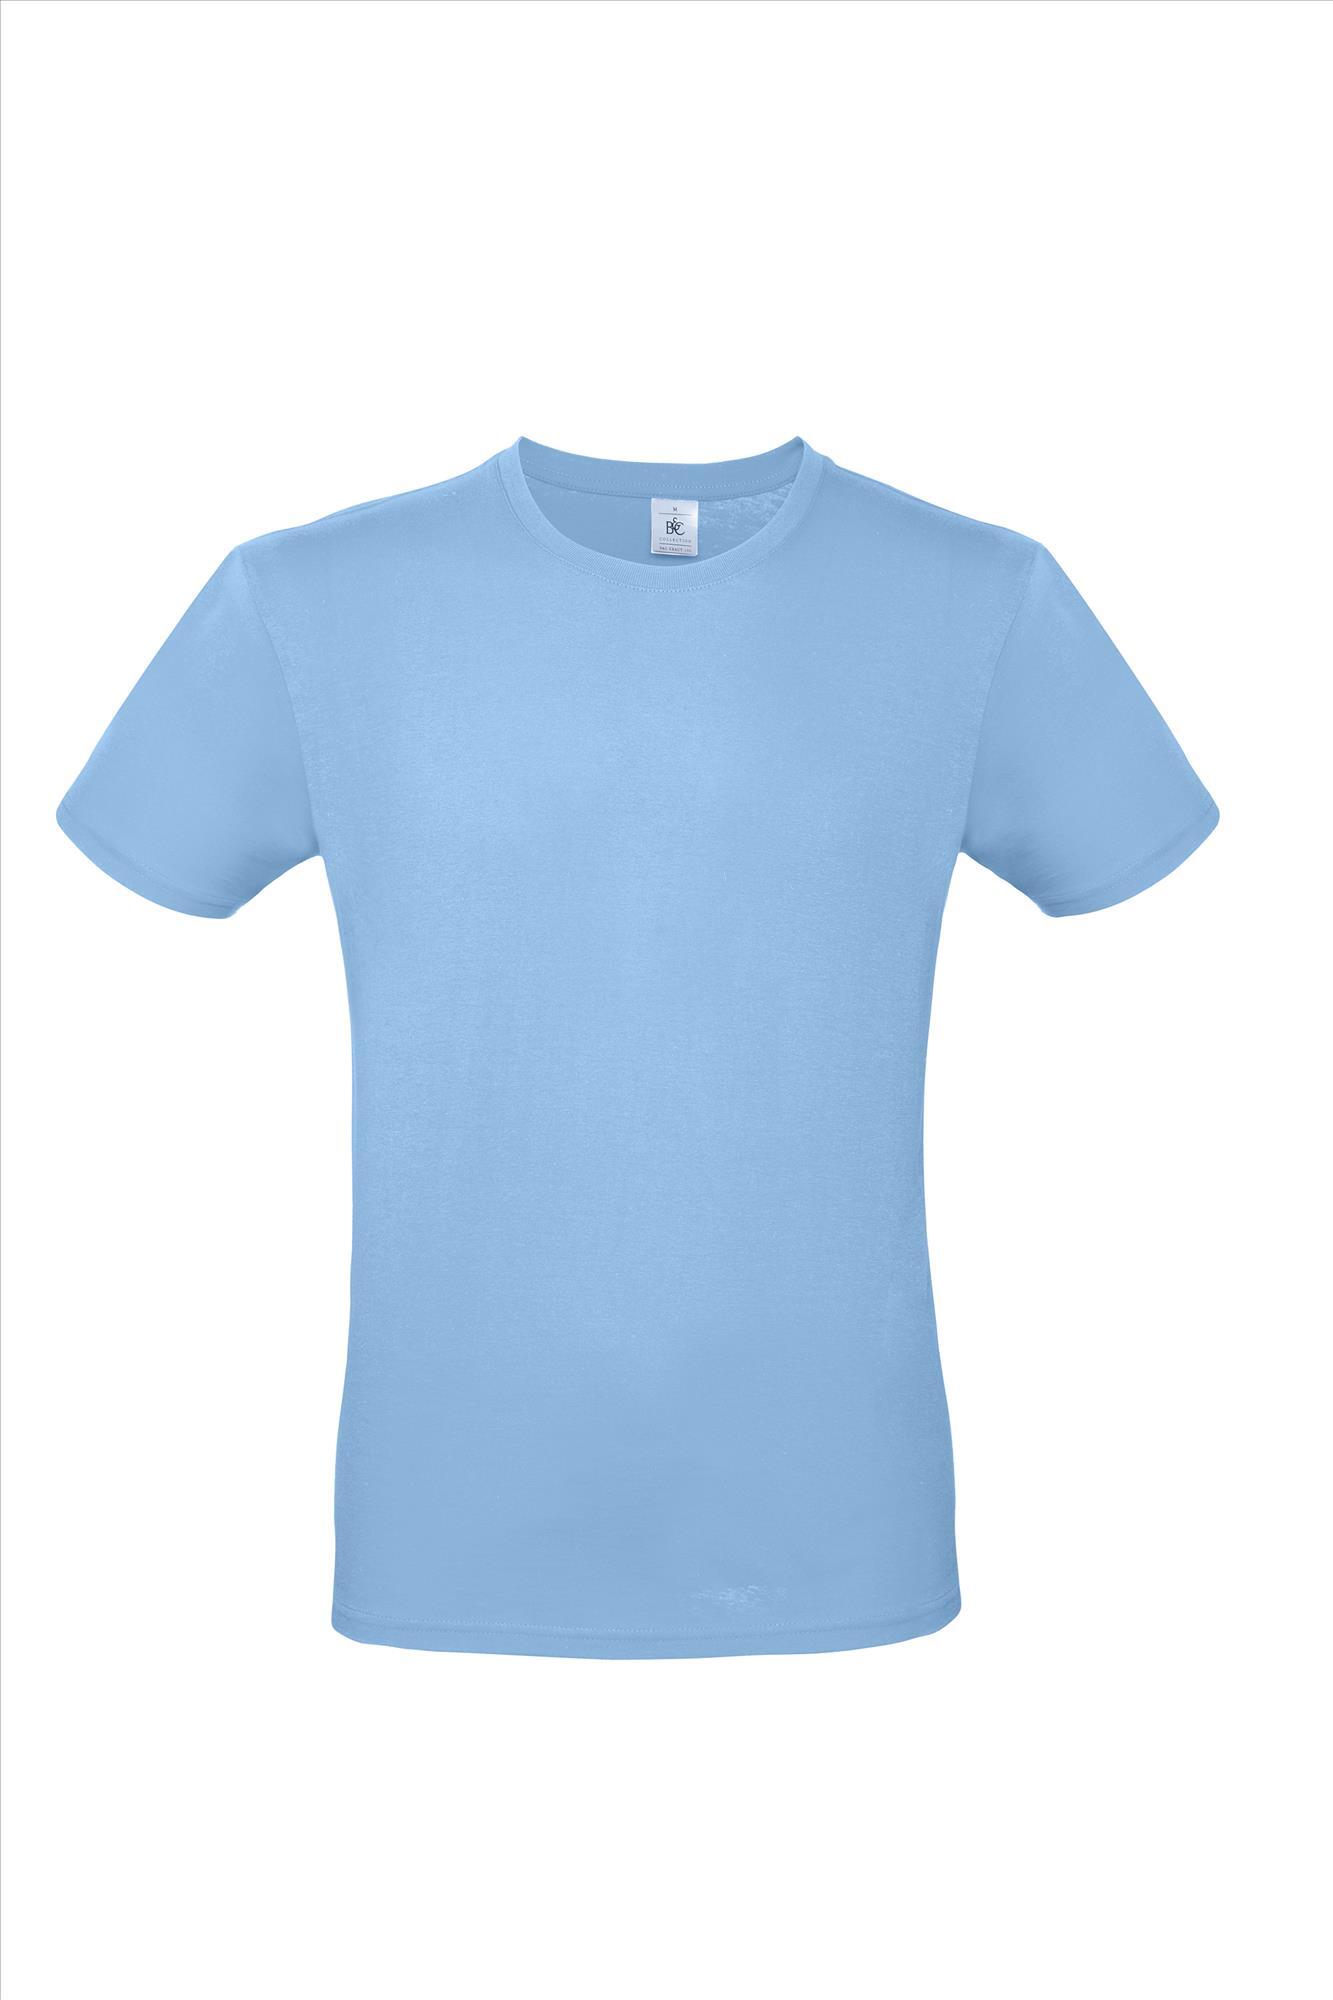 Modern T-shirt voor hem fraai heren shirt hemelsblauw